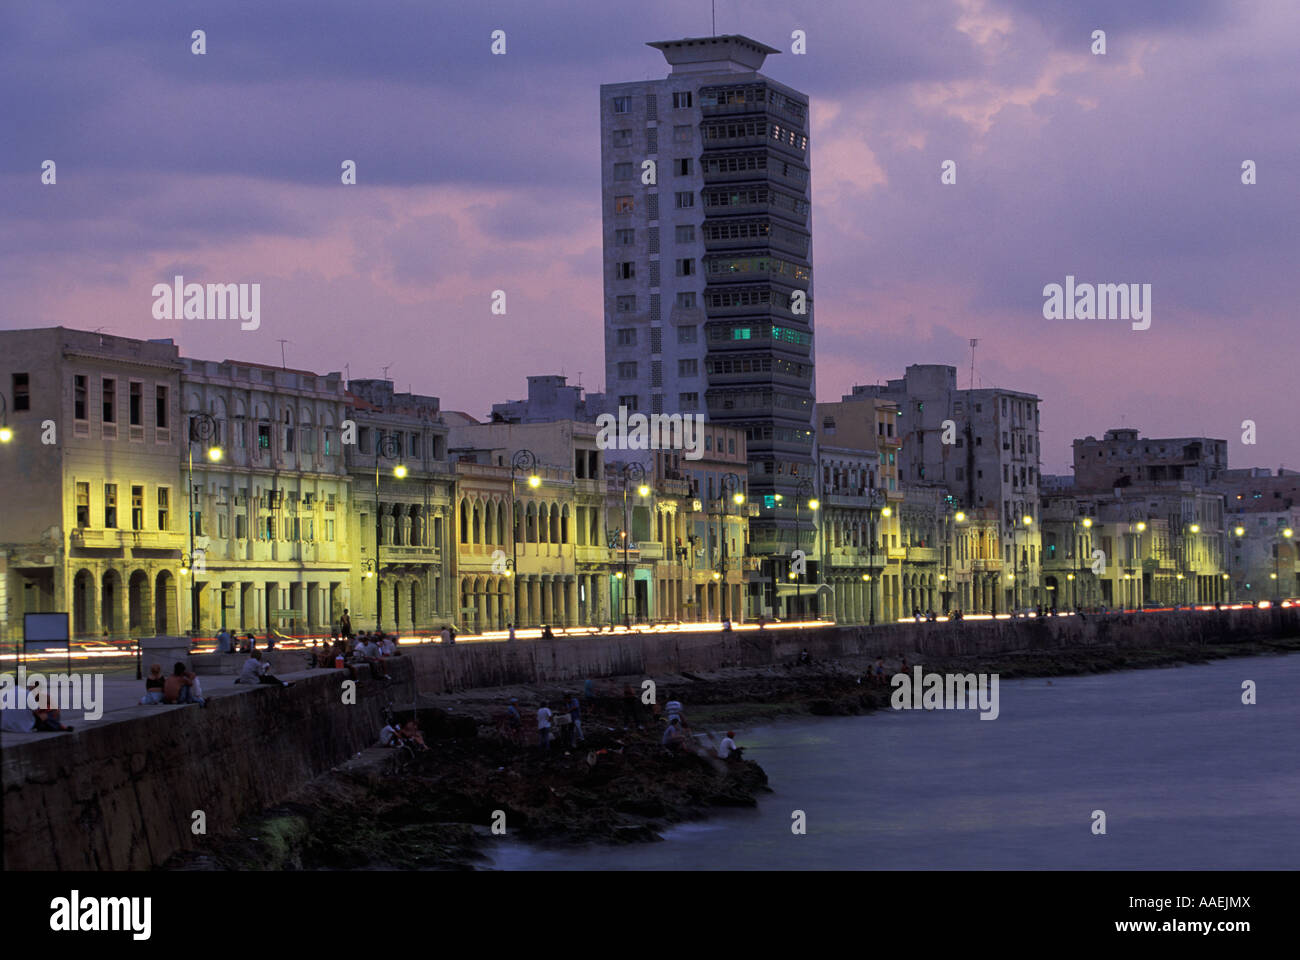 Beleuchtete Malecon in Havanna Kuba Karibik Abend Stockfoto